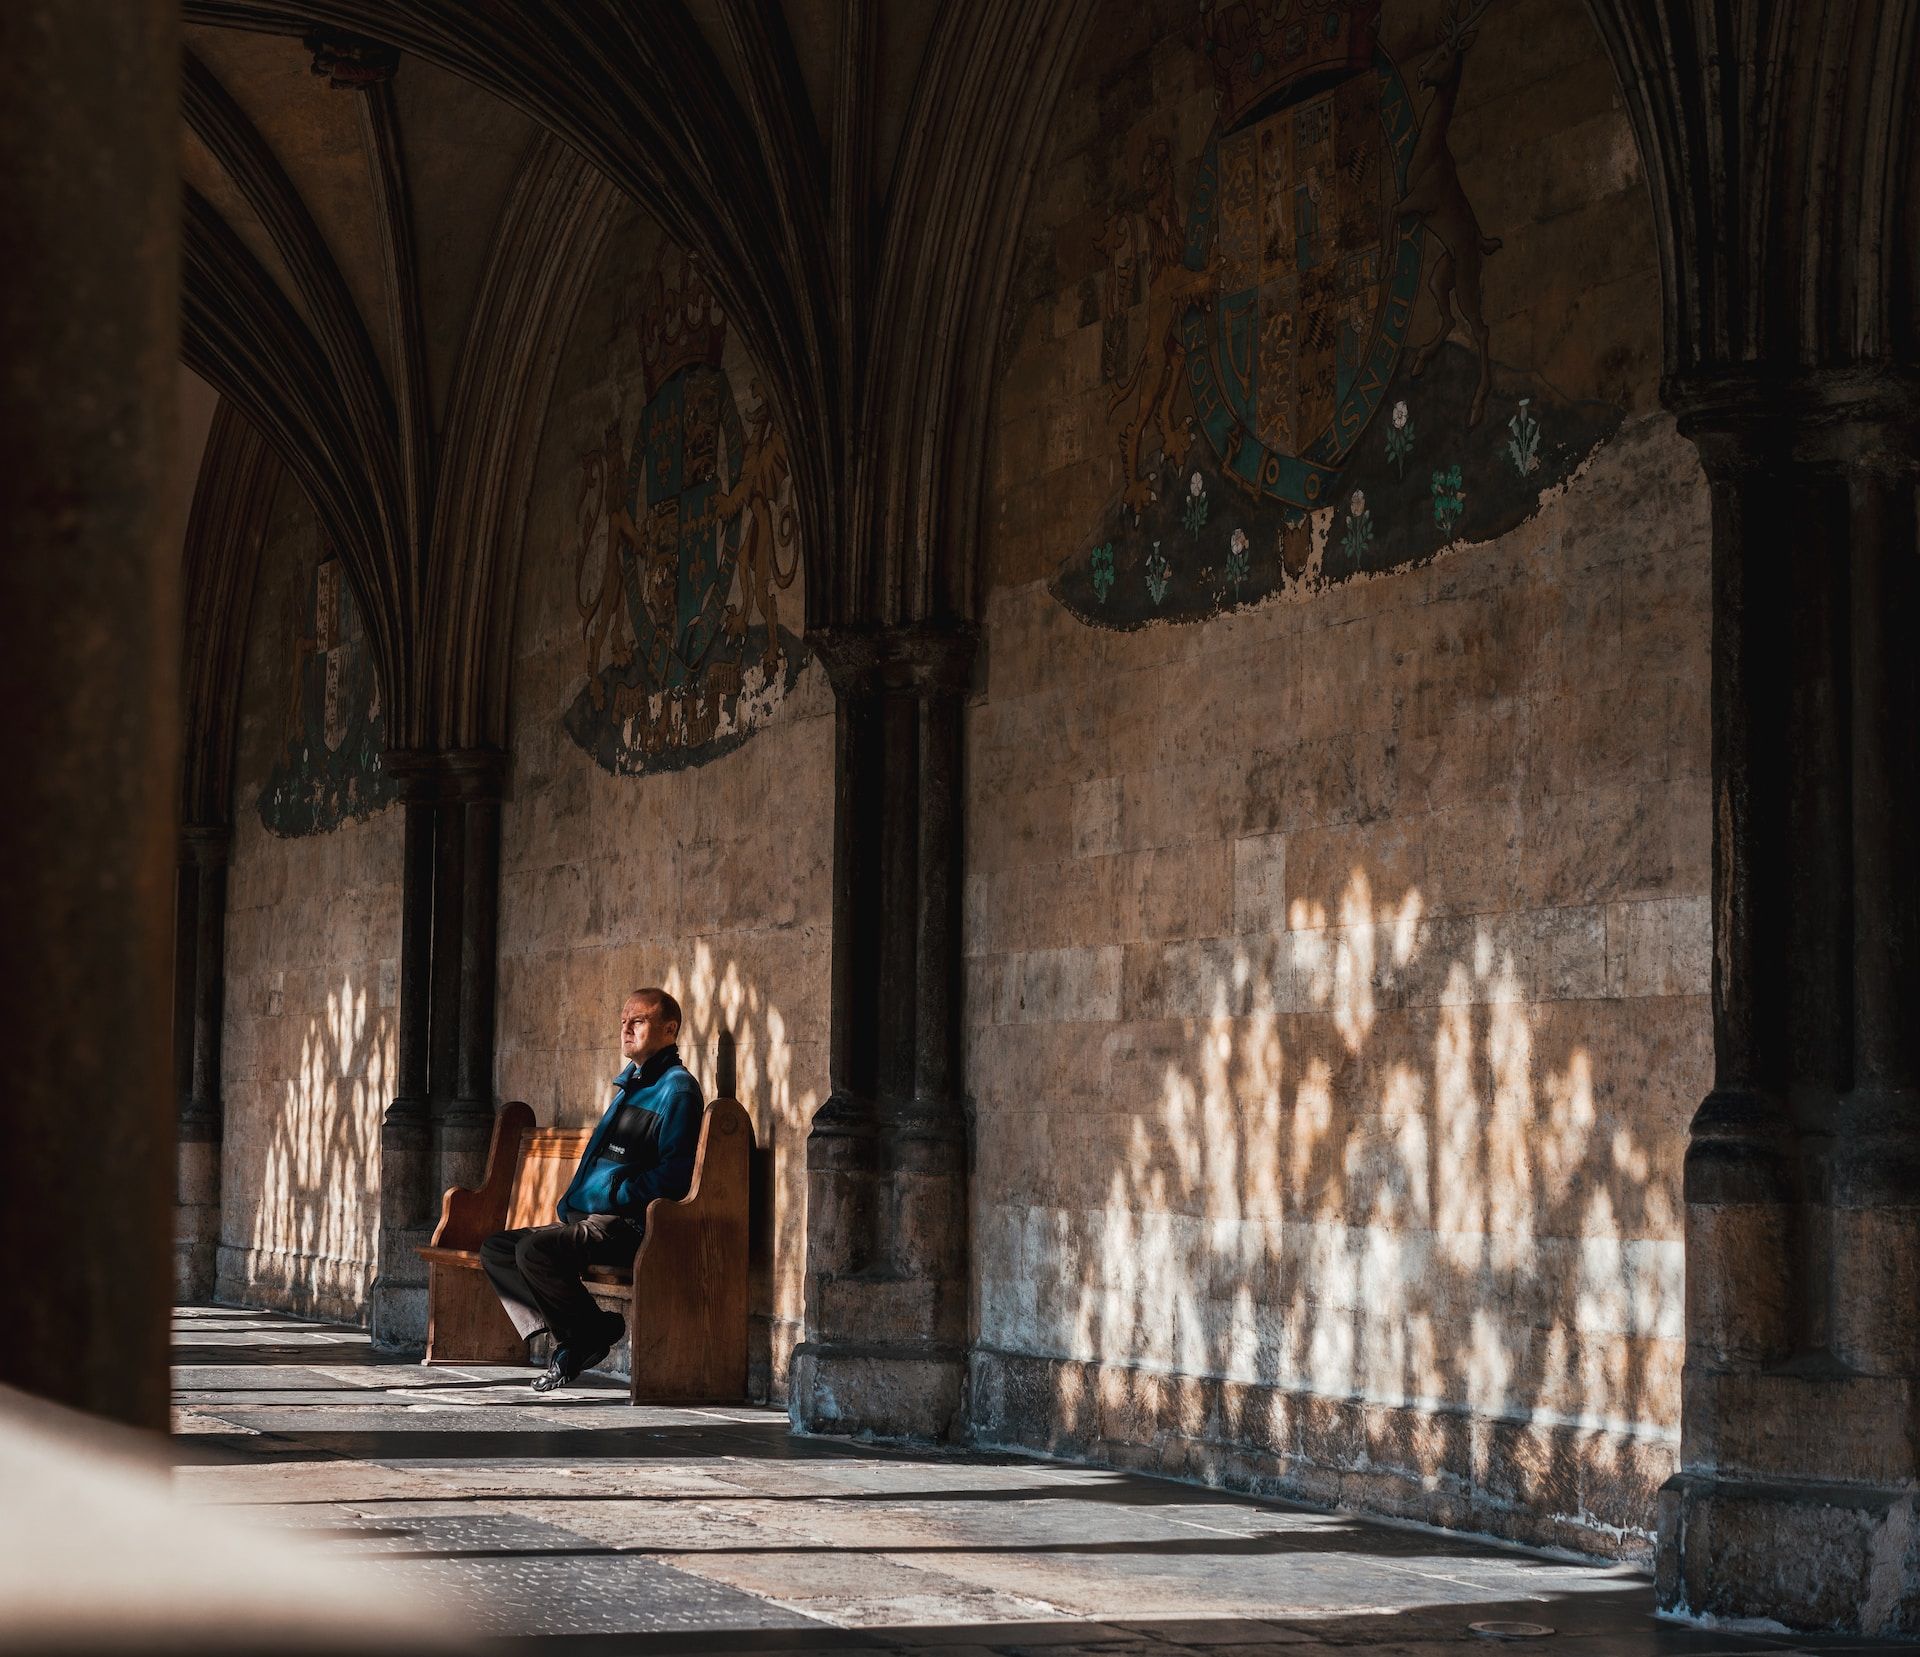 Un homme assis dans une église, mélancolique - Photo de isaac sloman sur https://unsplash.com/fr/photos/TMEhe5Mrif0